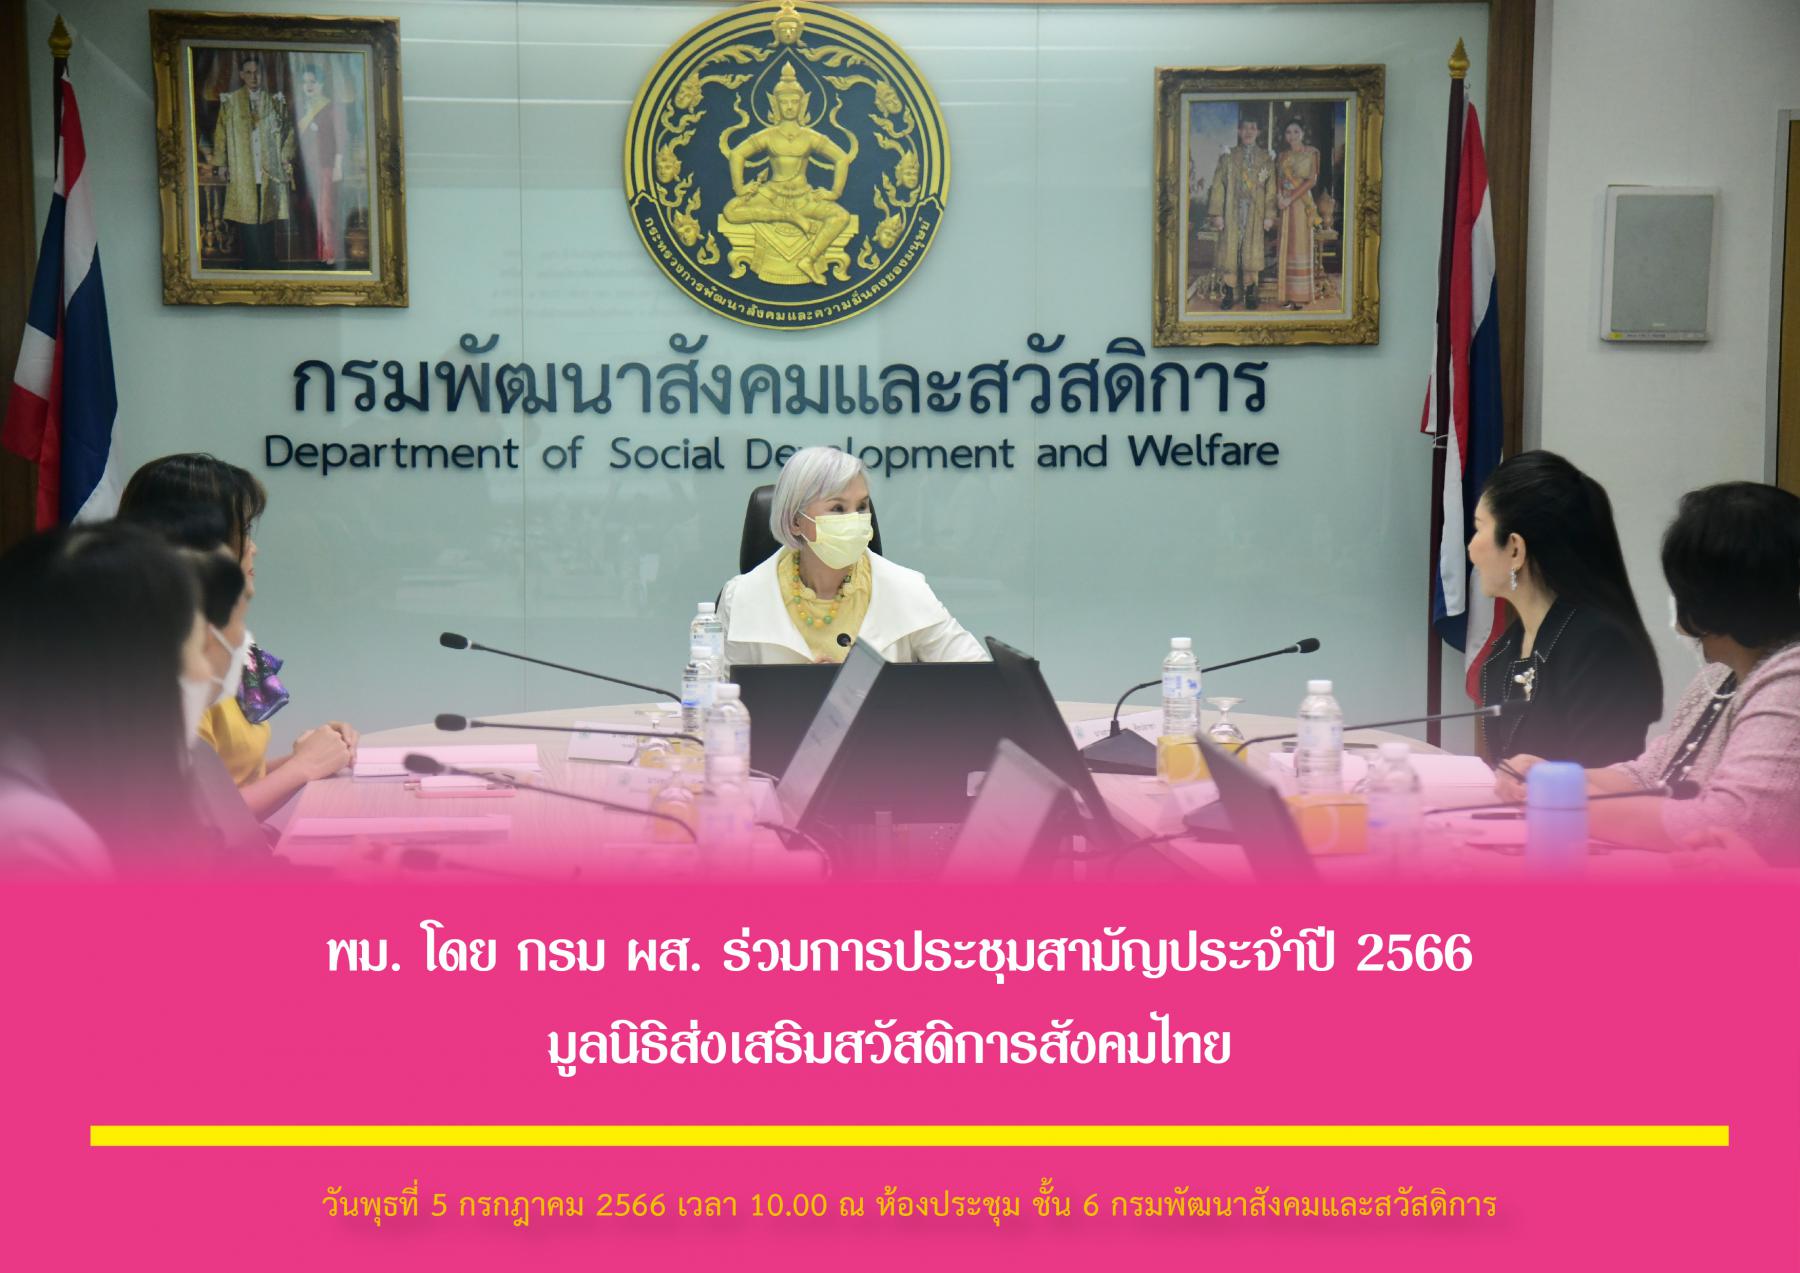 พม. โดย กรม ผส. ร่วมการประชุมสามัญประจำปี 2566 มูลนิธิส่งเสริมสวัสดิการสังคมไทย 